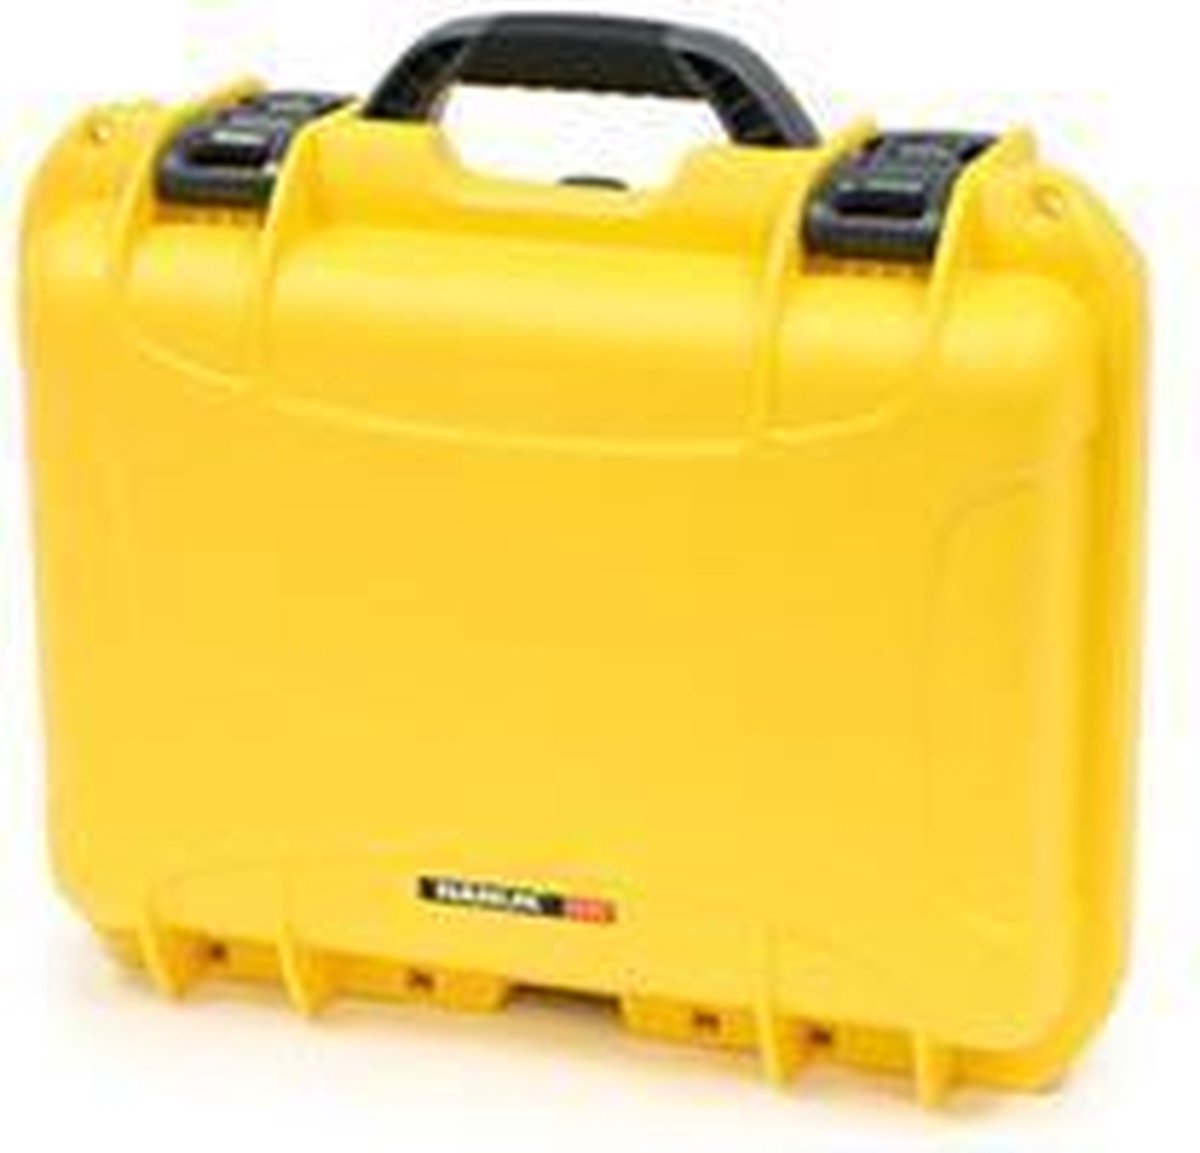 Nanuk 920 Case - Yellow